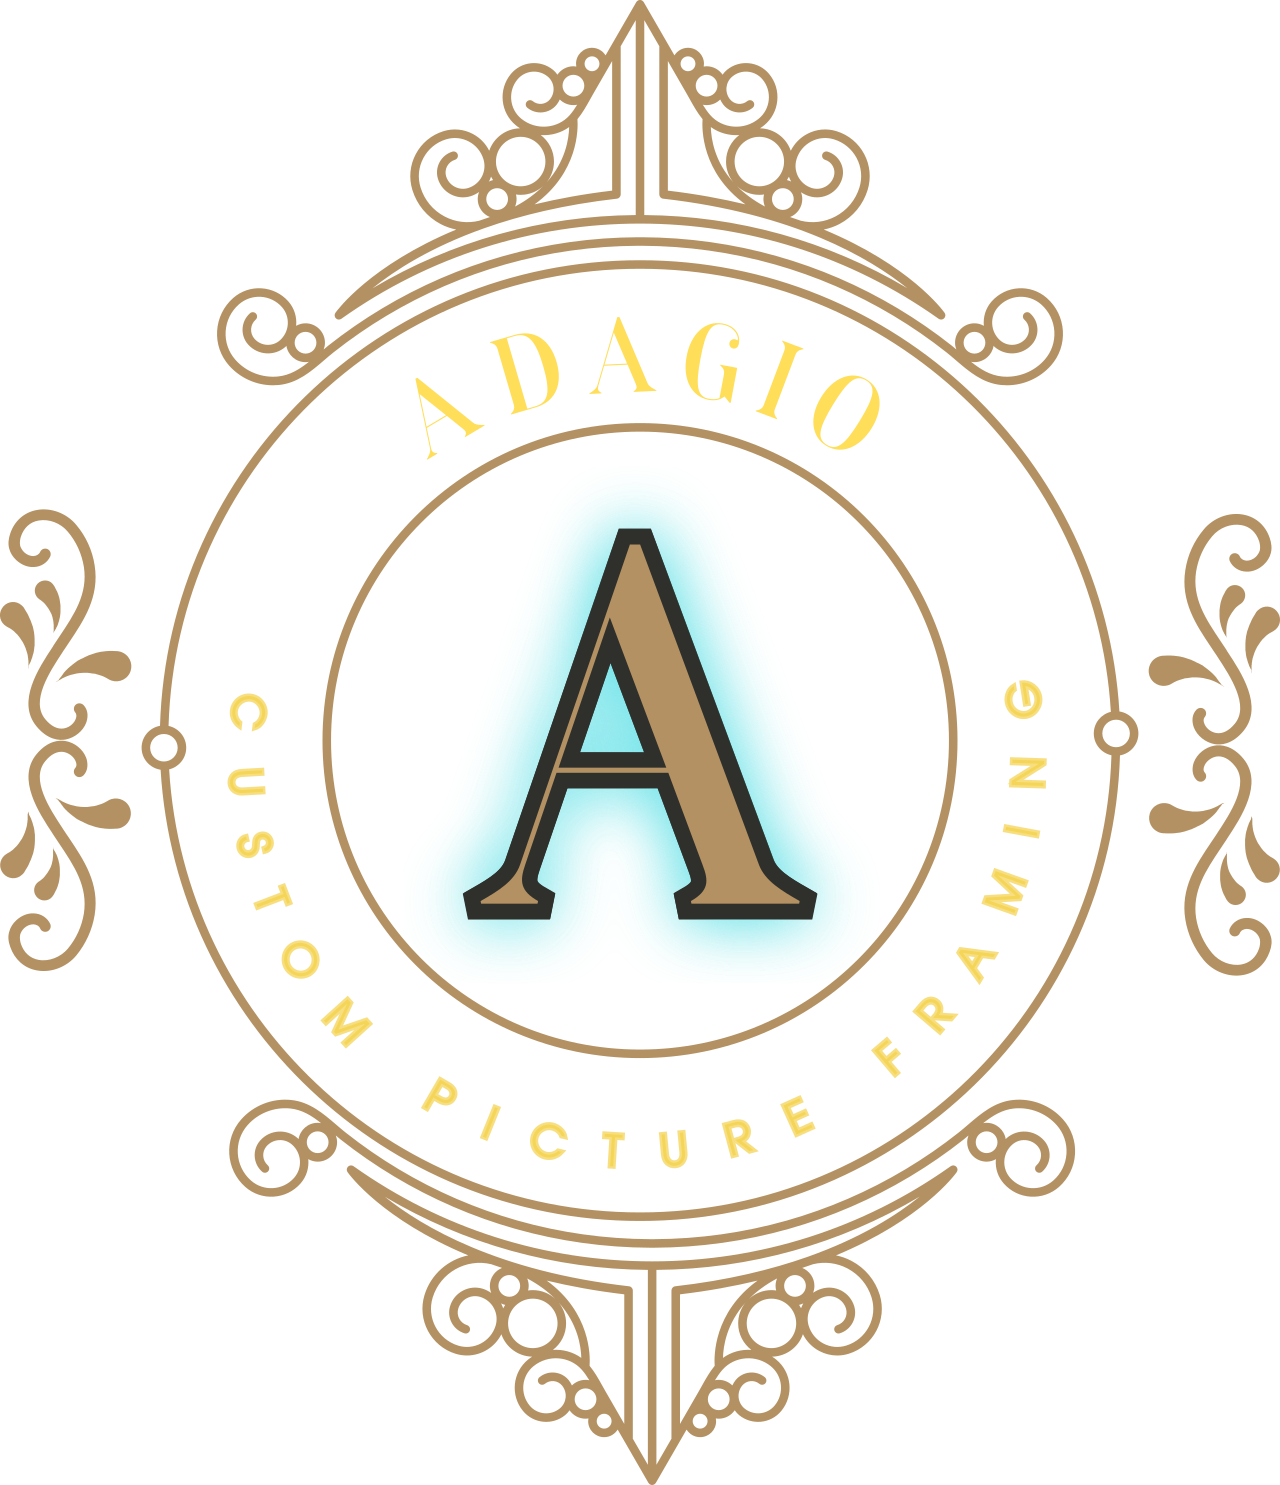 ADAGIO CUSTOM PICTURE FRAMING's logo